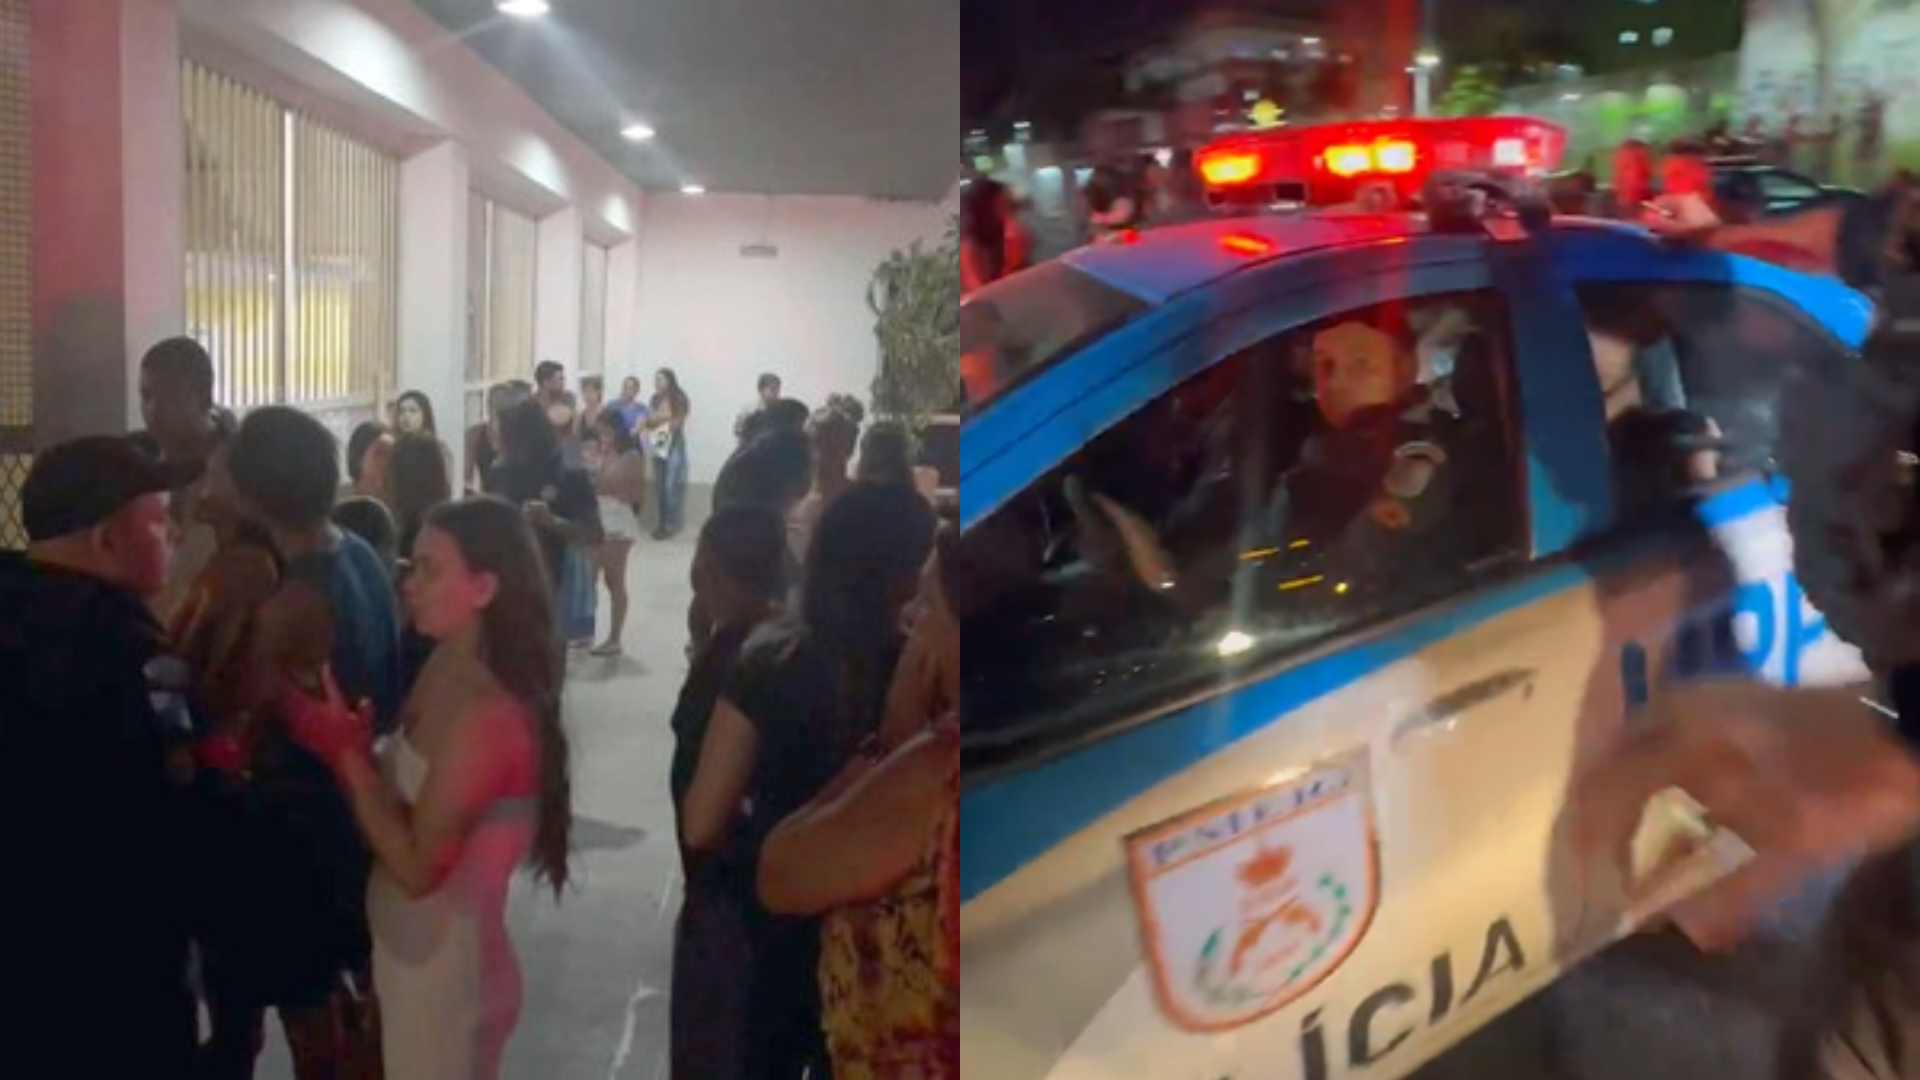 Festa de formatura no RJ acaba em confusão após aluna dizer que perdeu R$ 19 mil; jovem sai escoltada pela polícia – assista